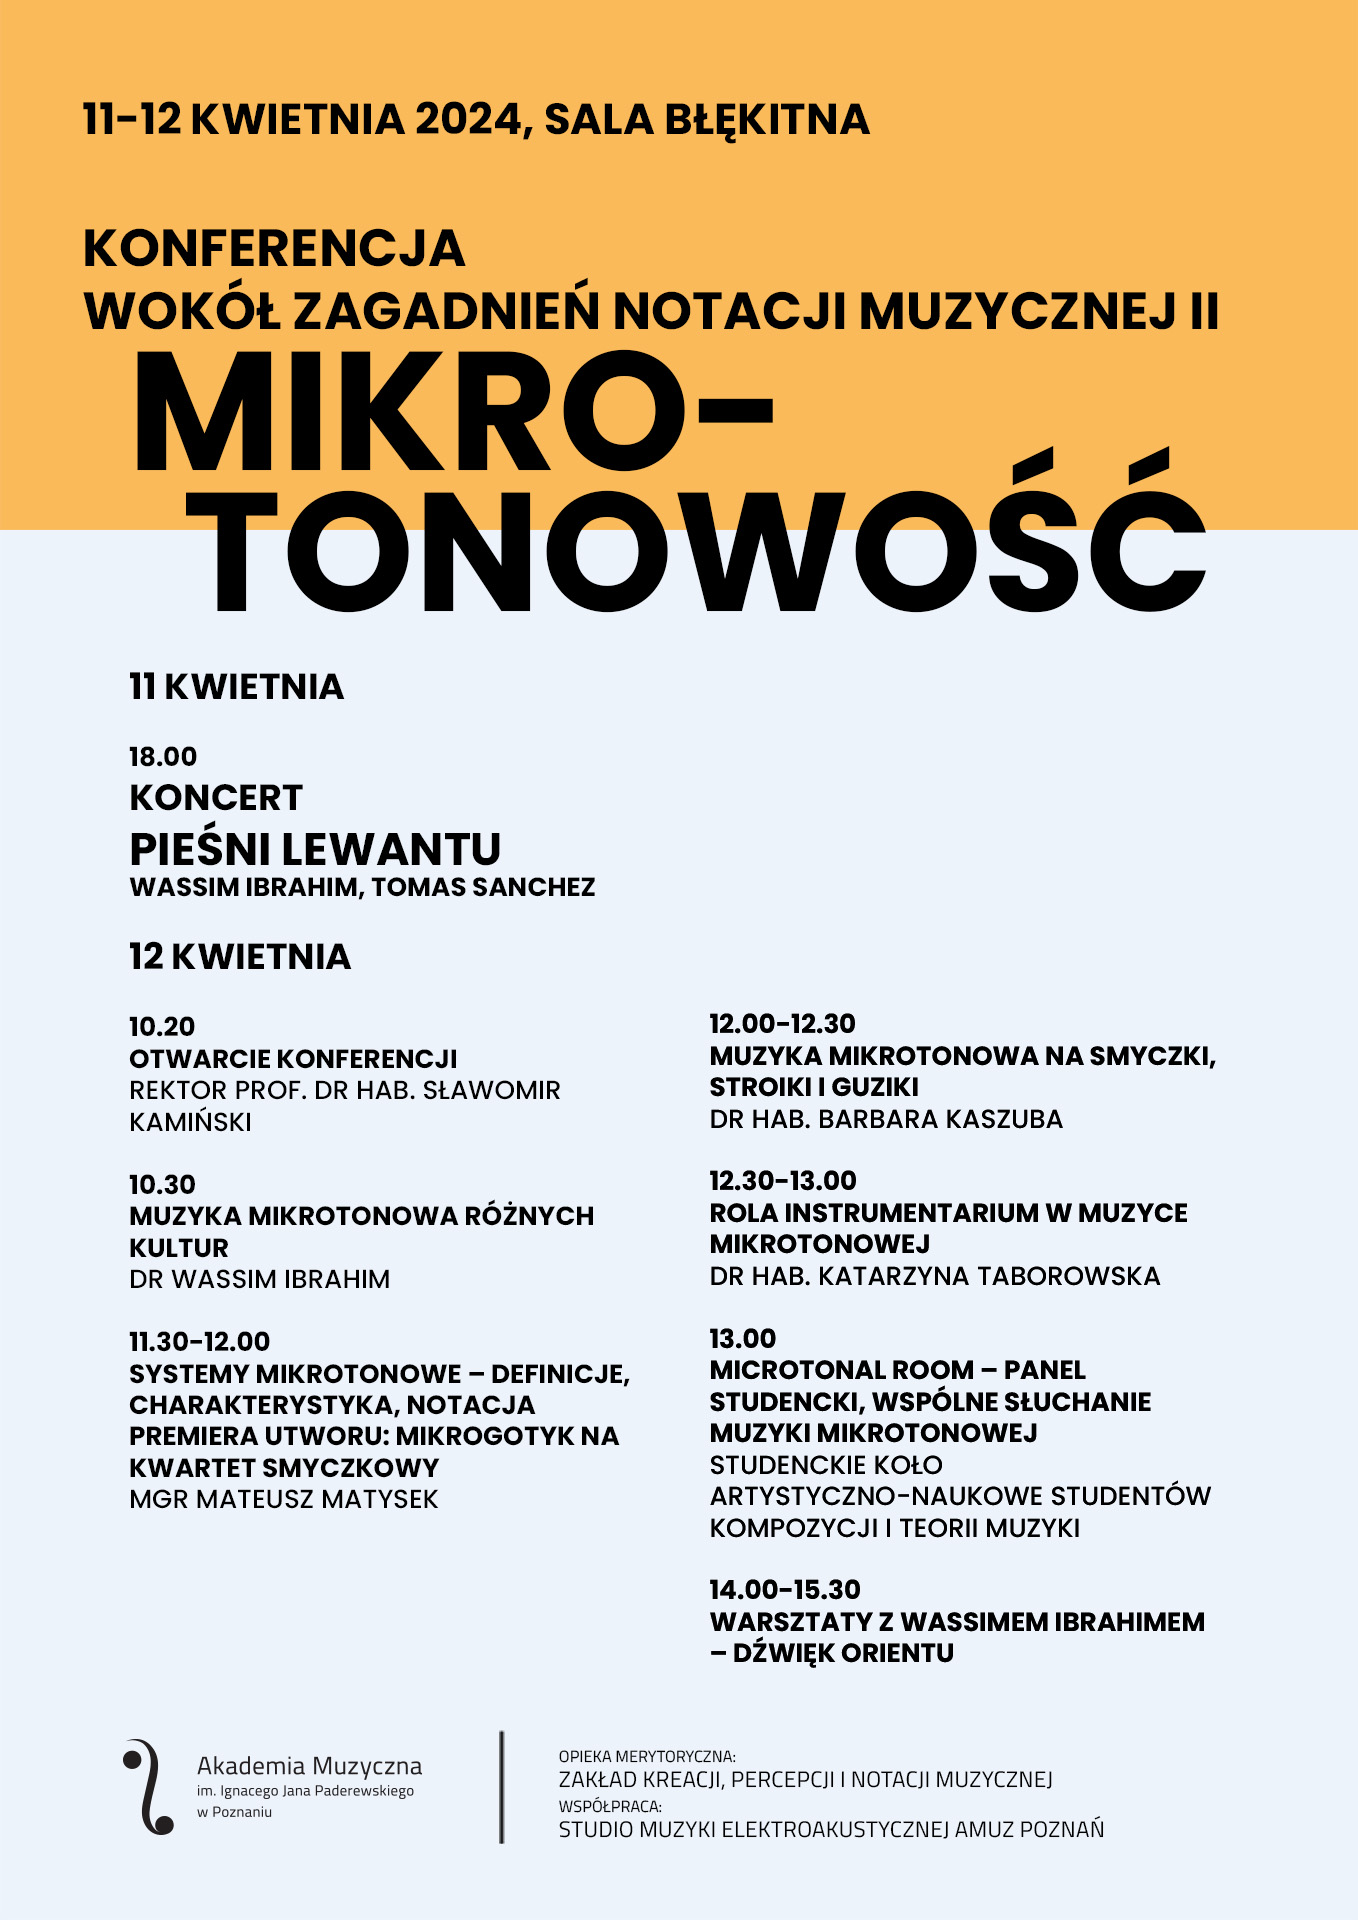 Afisz zawiera informacje na temat konferencji Mikrotonowość II w dniu 12 kwietnia 2024